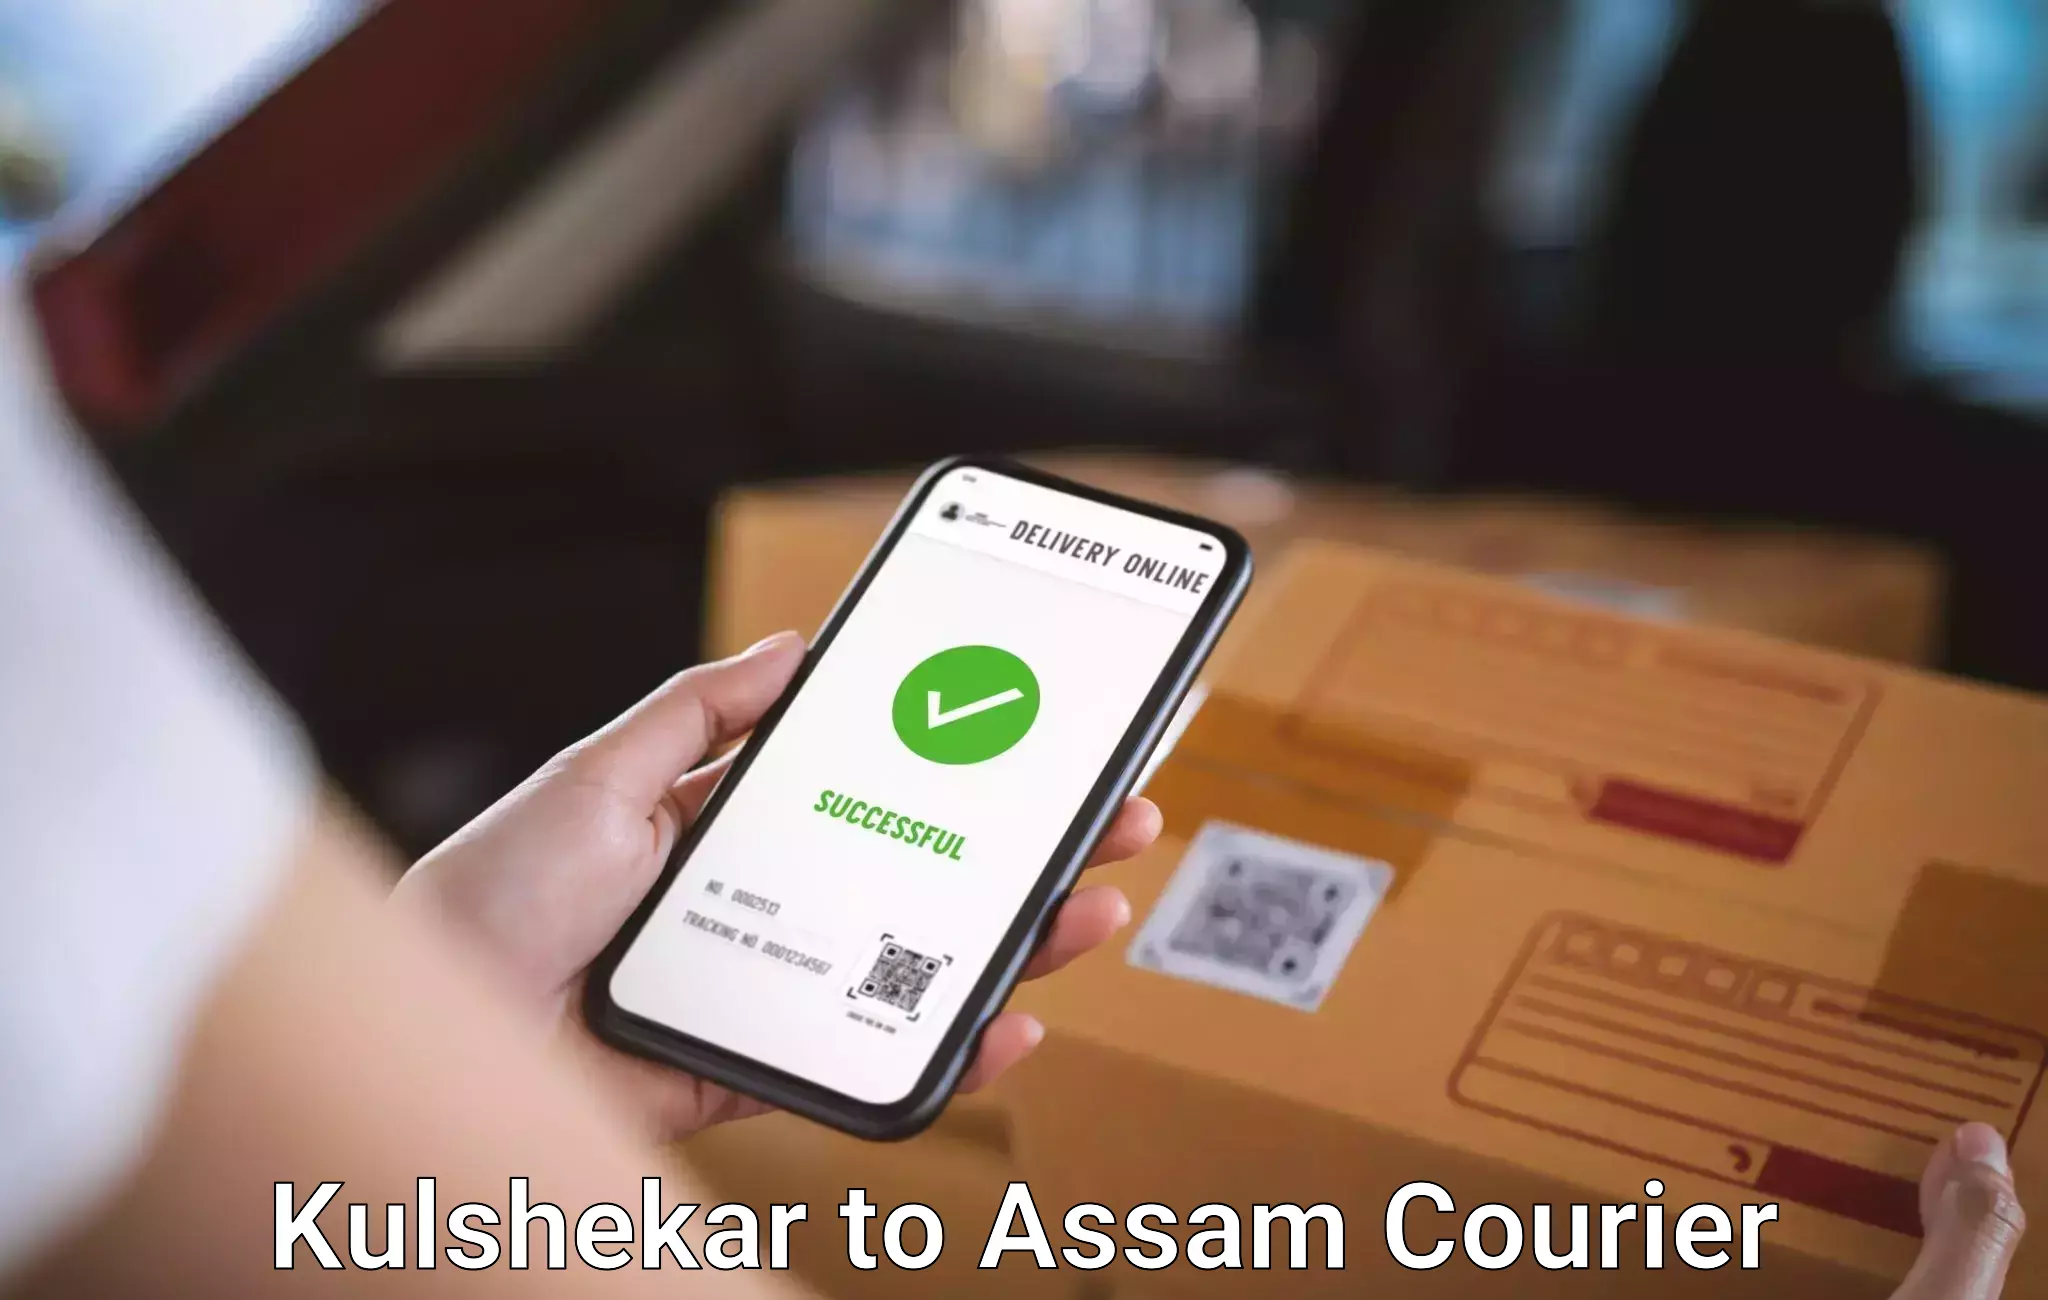 Hassle-free luggage shipping Kulshekar to Lala Assam